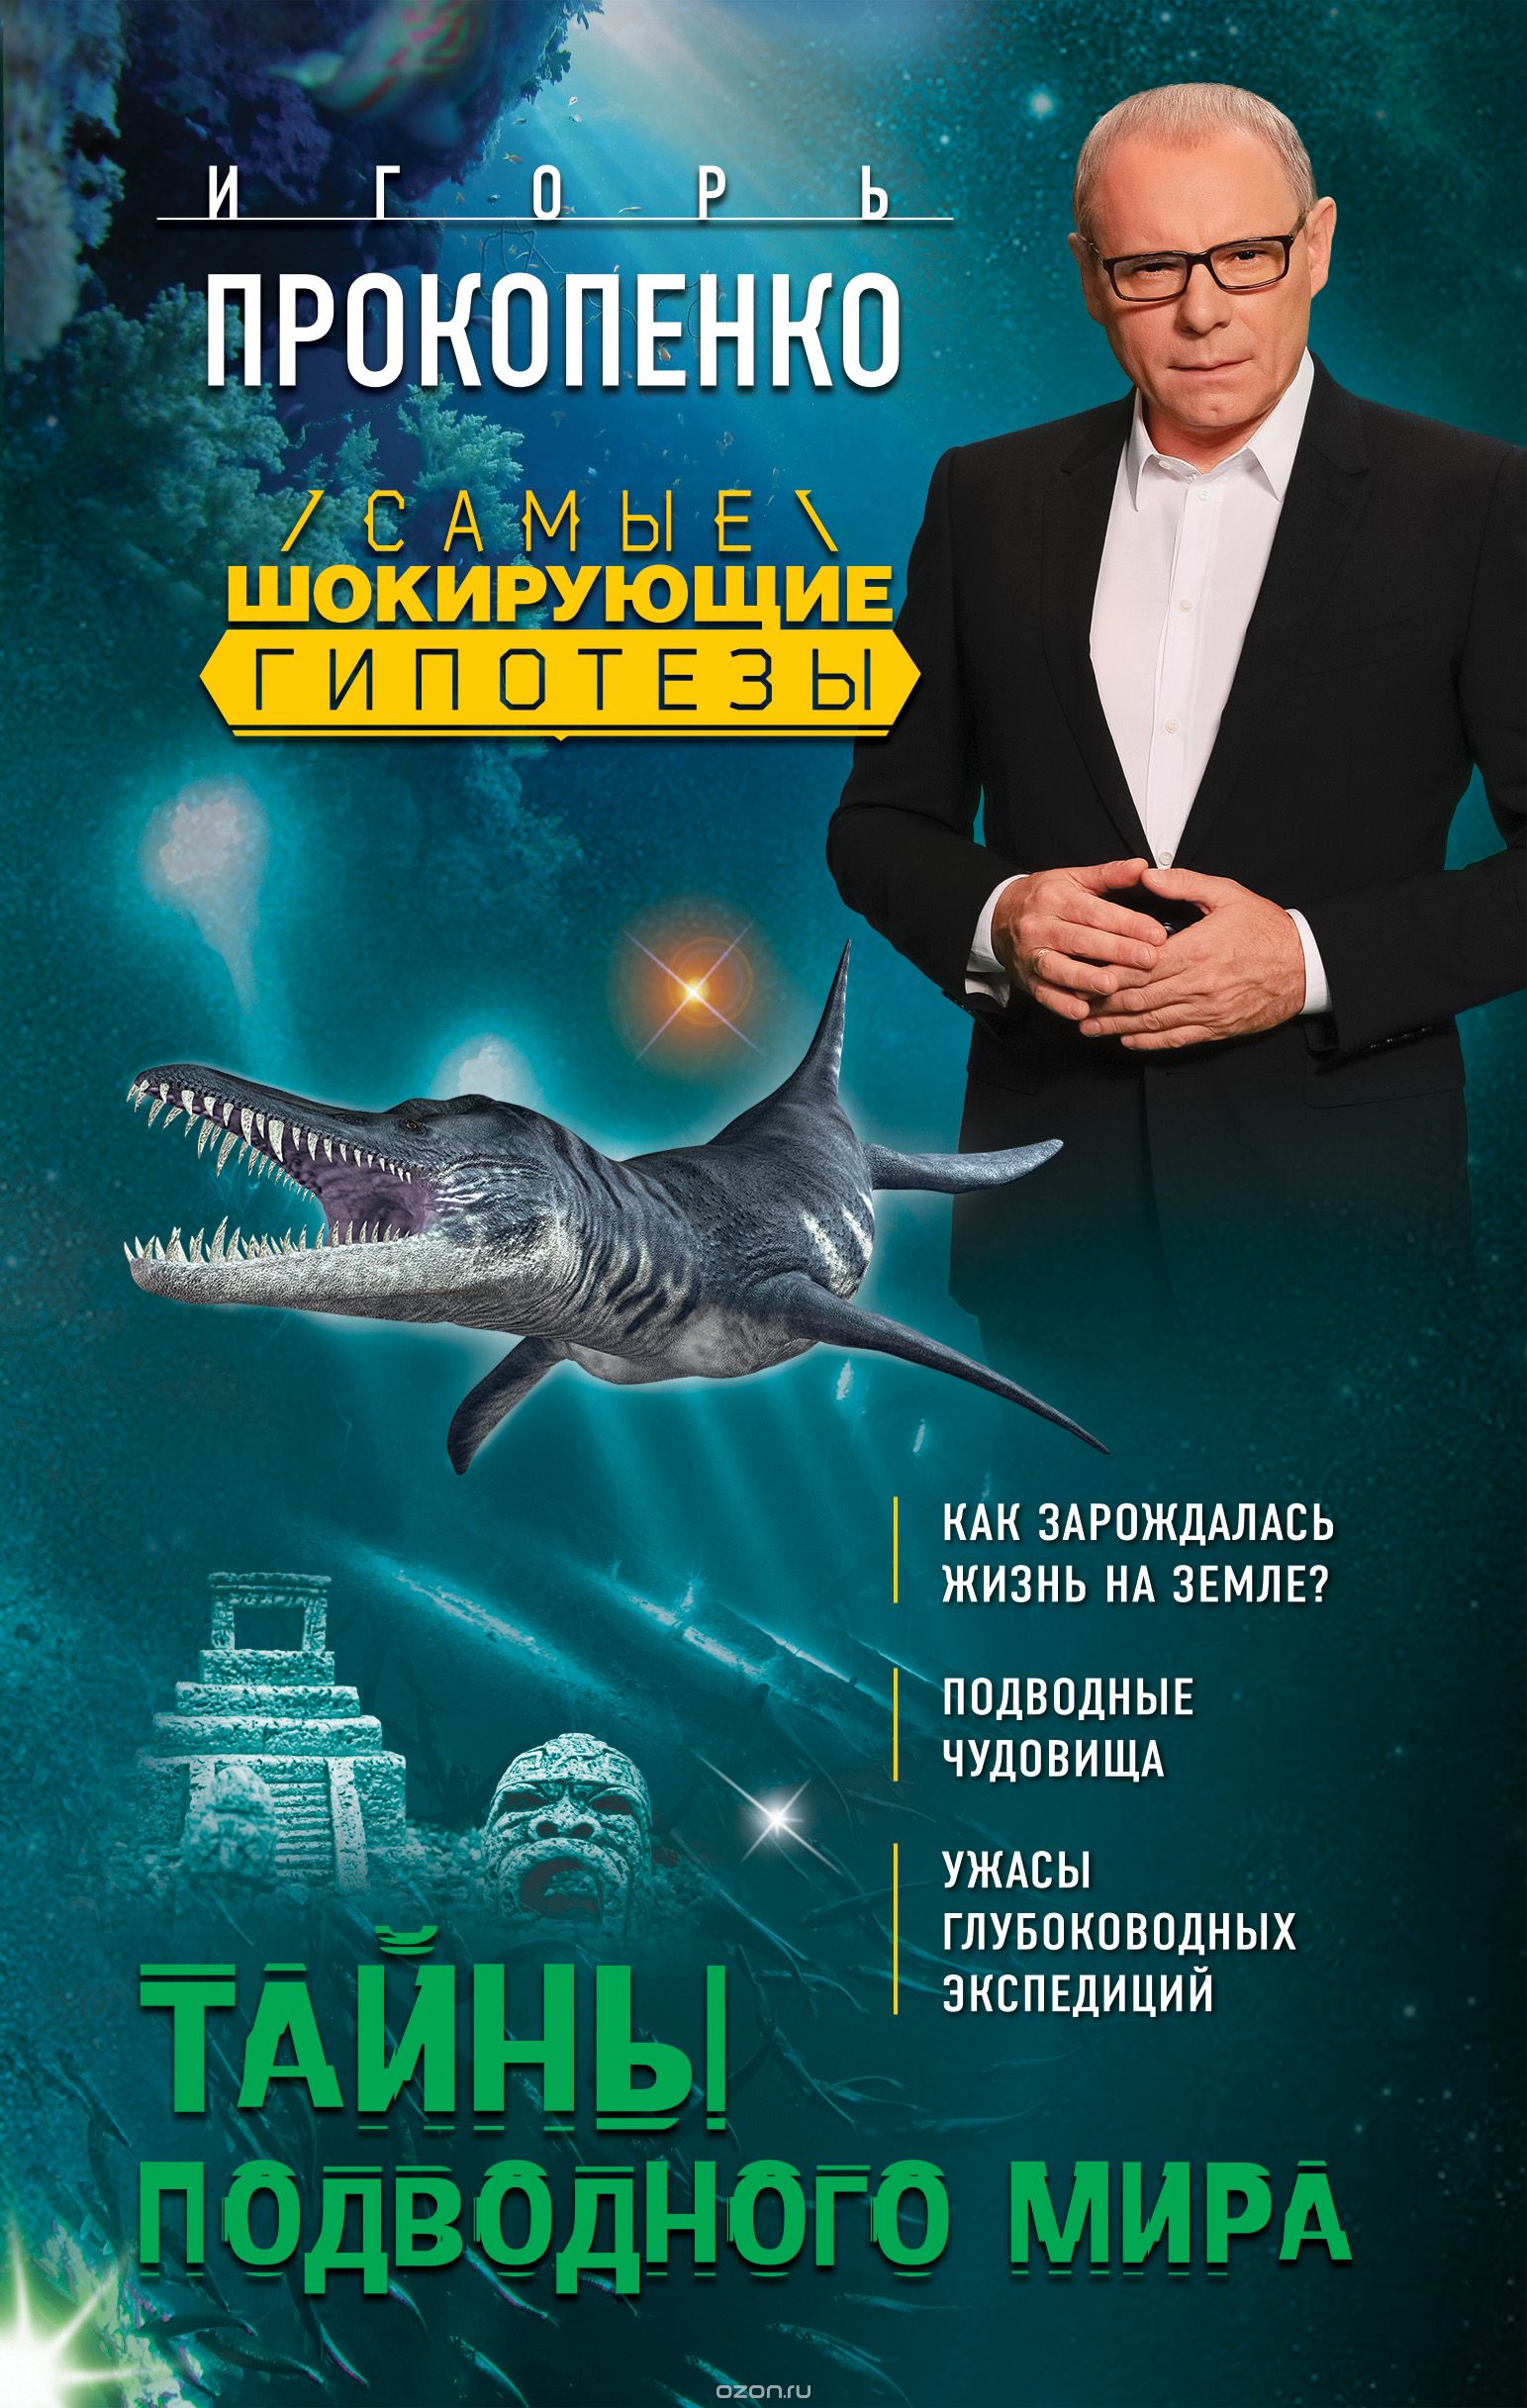 Скачать книгу "Тайны подводного мира, Игорь Прокопенко"